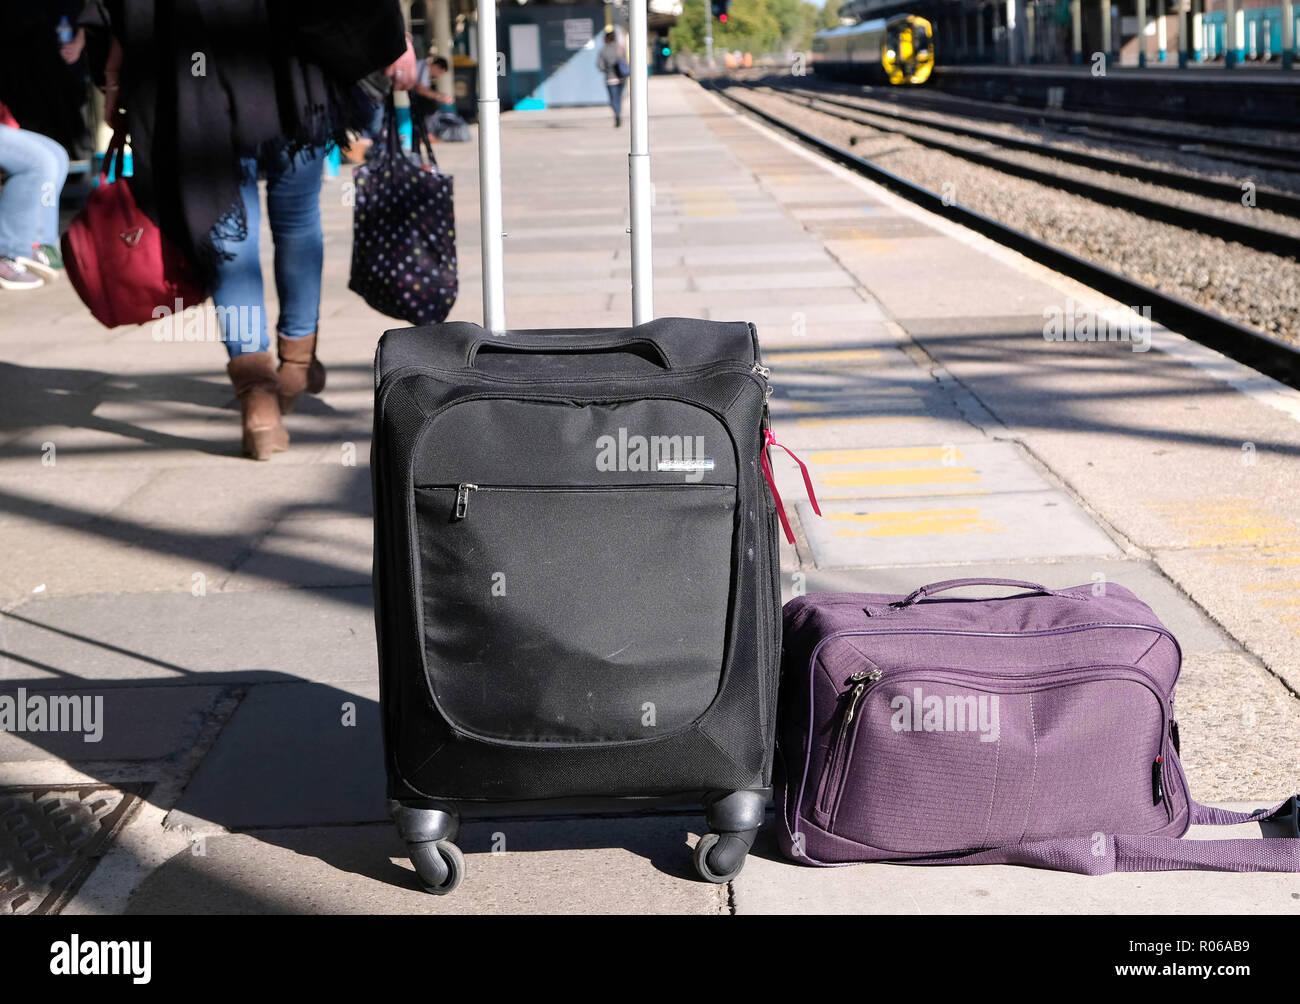 Bild zeigt: Neue winzige Tasche Größe auf Ryanair Ebenen erlaubt. Lila  Tasche ist die neue Größe 40-20-25 cm neben der alten erlaubt (Wheelie bag),  w Stockfotografie - Alamy